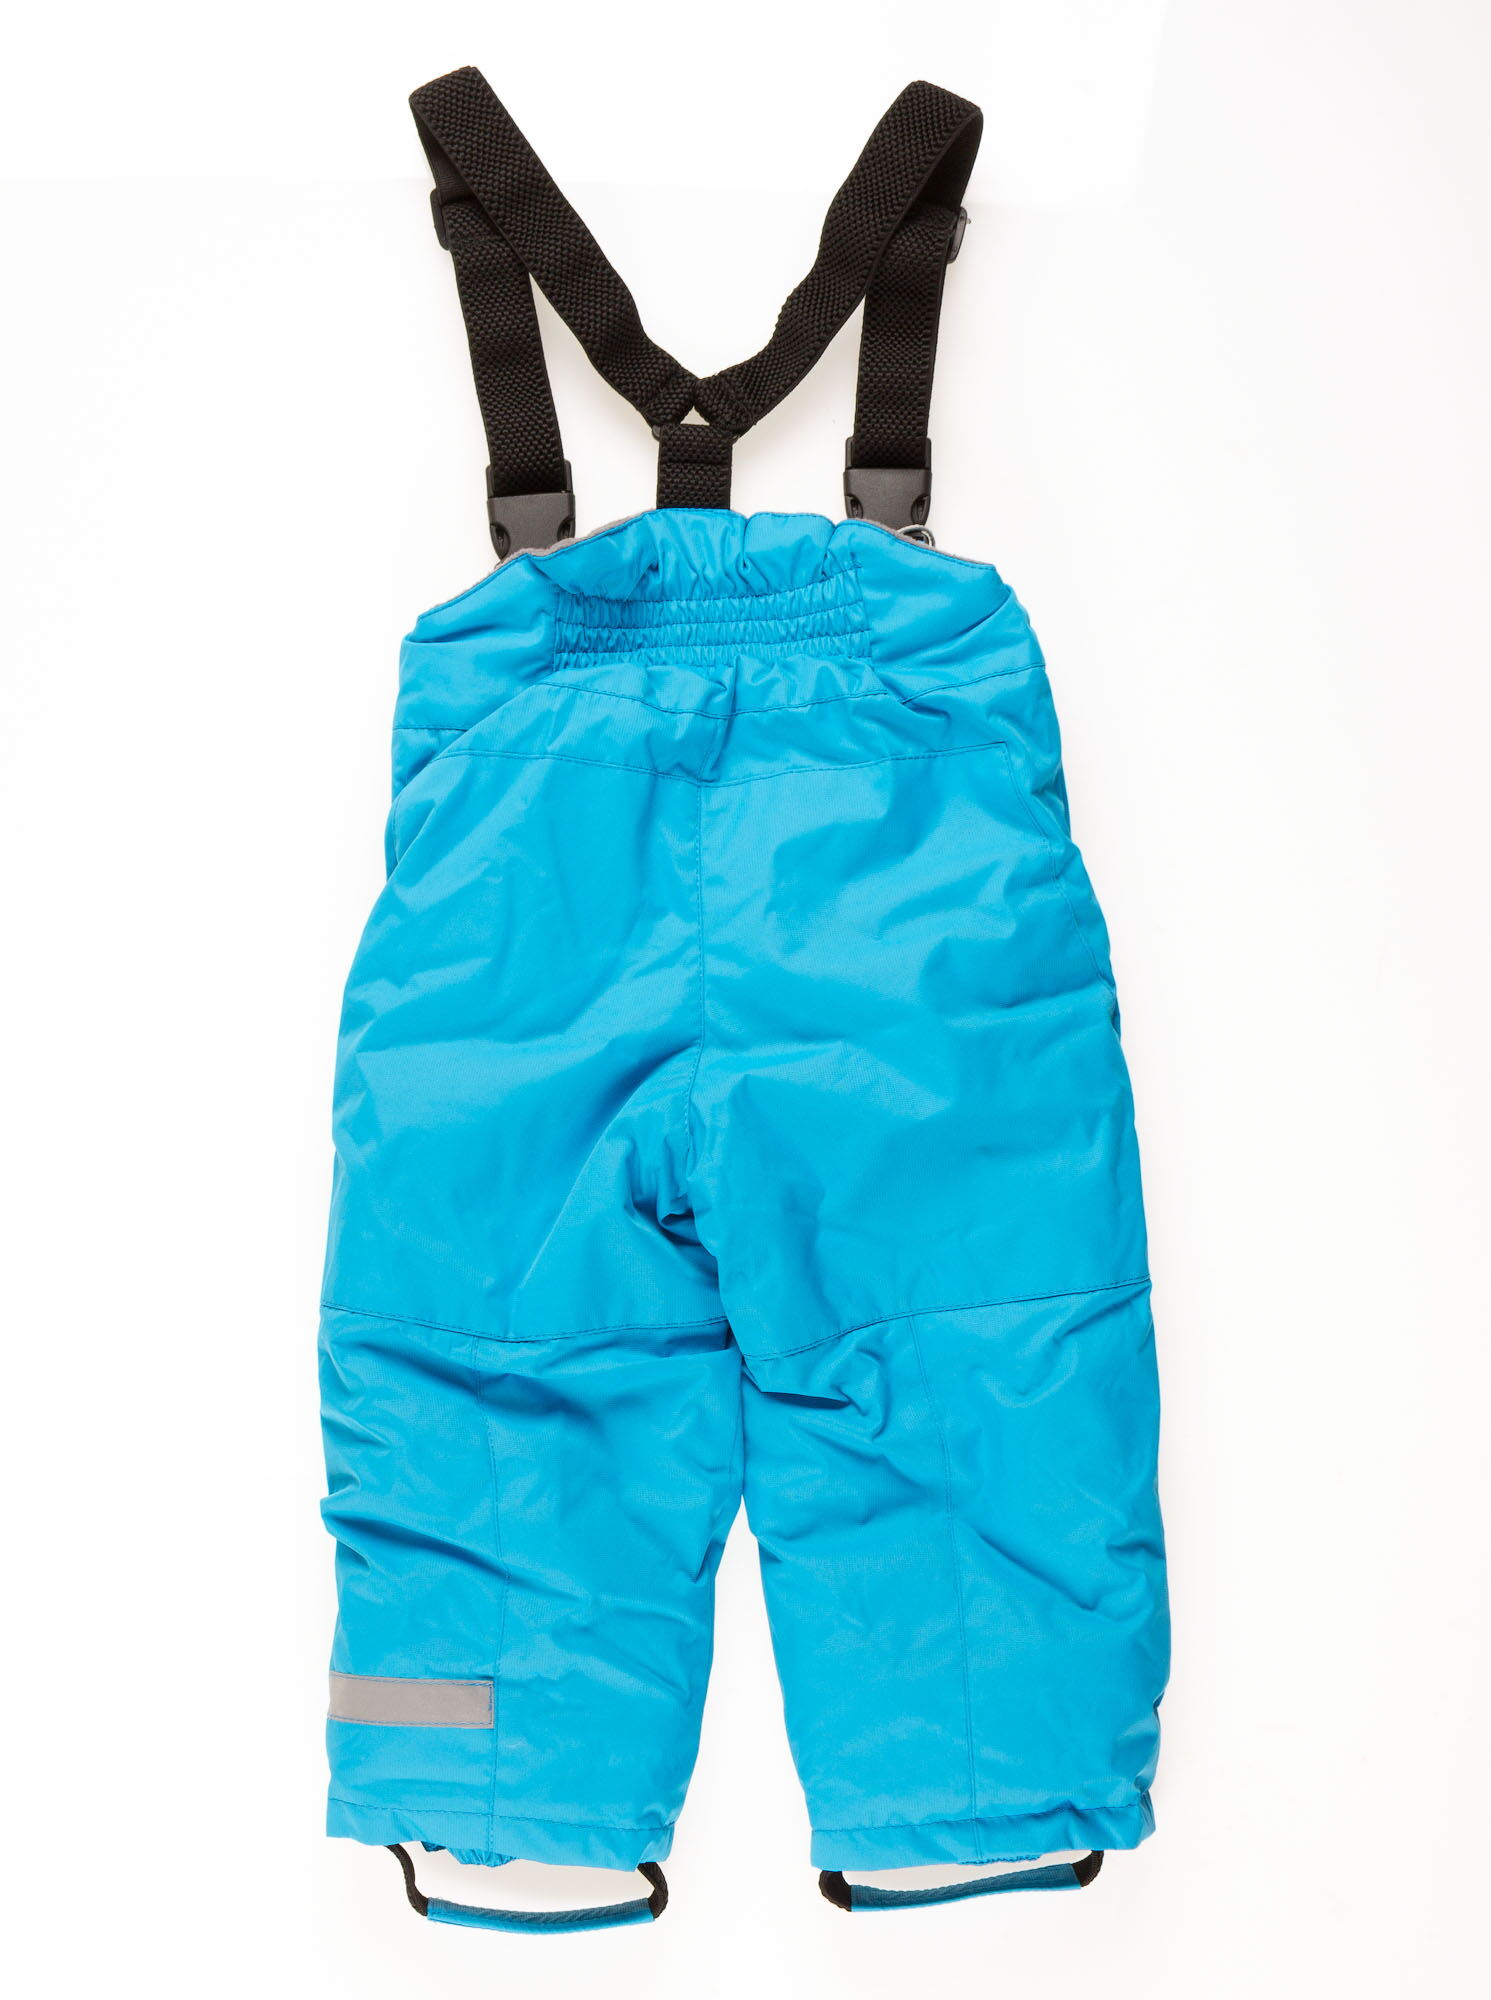 Комбинезон зимний раздельный для мальчика (куртка+штаны) DCkids голубой Скай - картинка